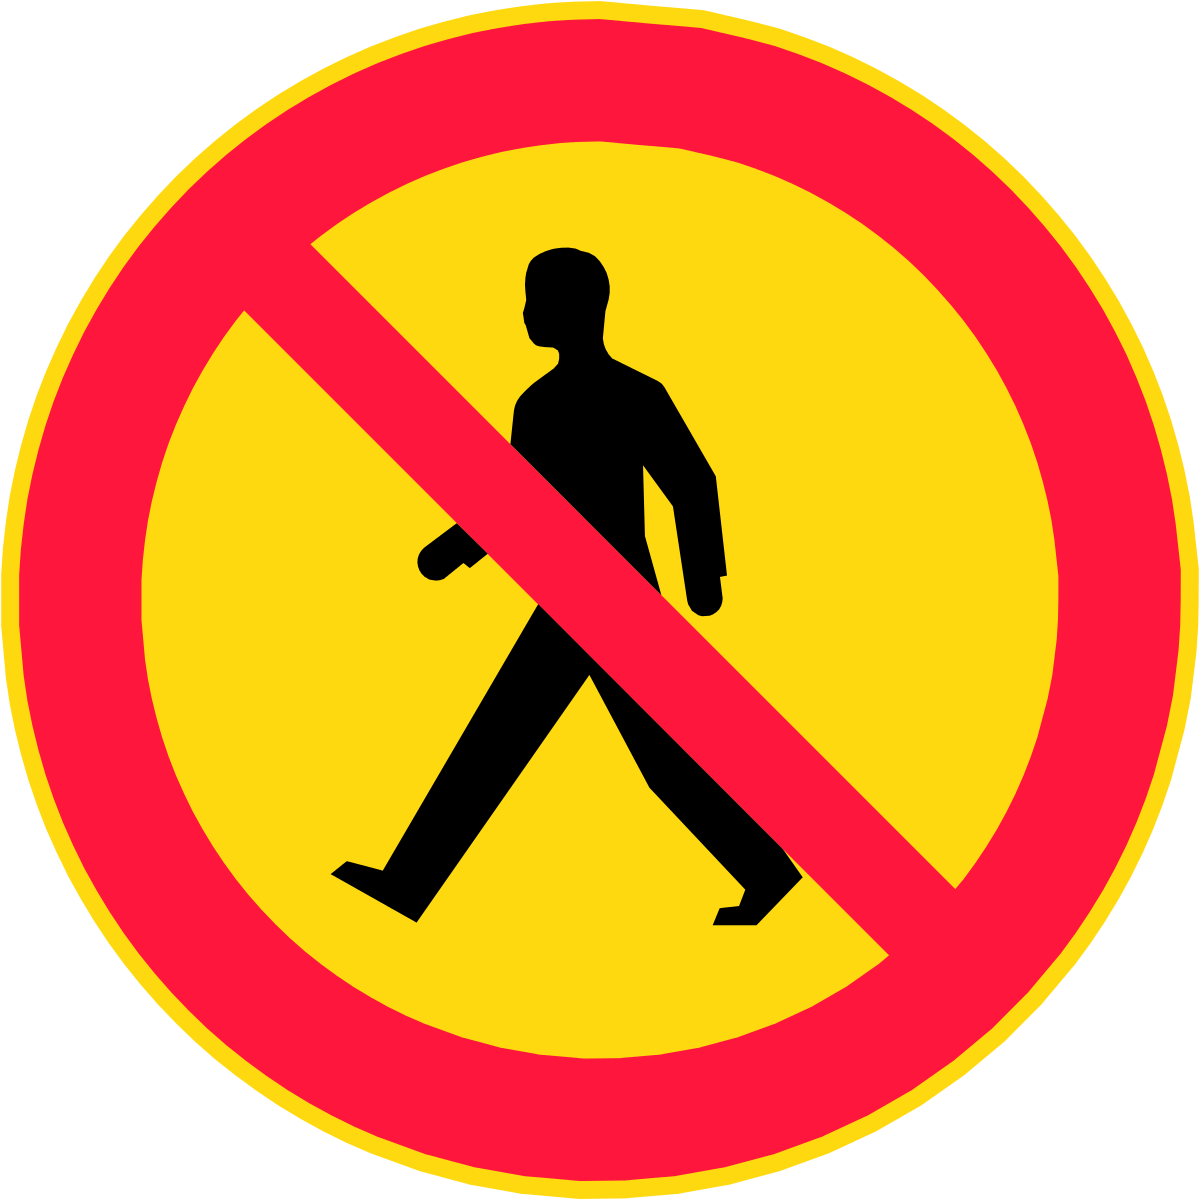 Jalankulku - Vehicle No Entry Sign (1200x1200)